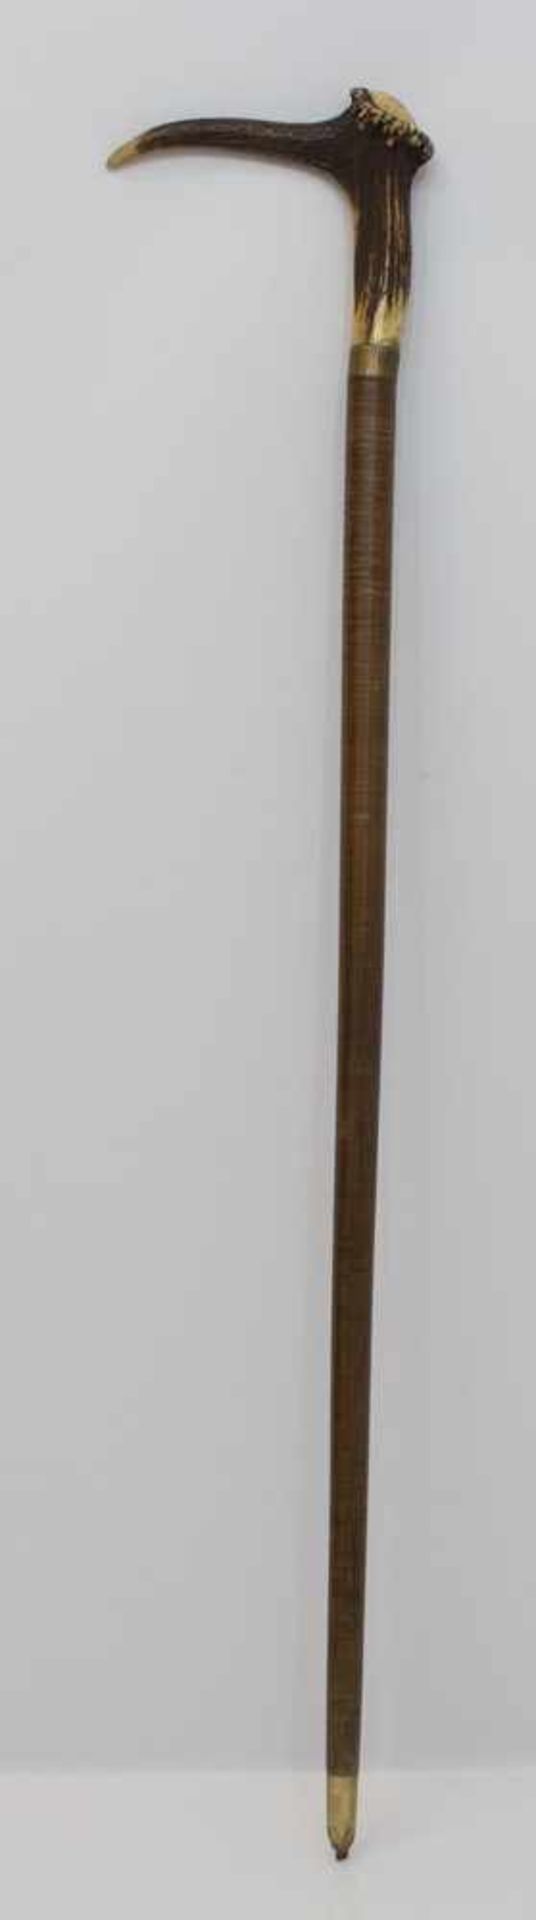 Gehstock Krücke aus Geweihenden vom Rothirsch, federnde Stahlseele mit Lederwicklung, L. 83,5 cm